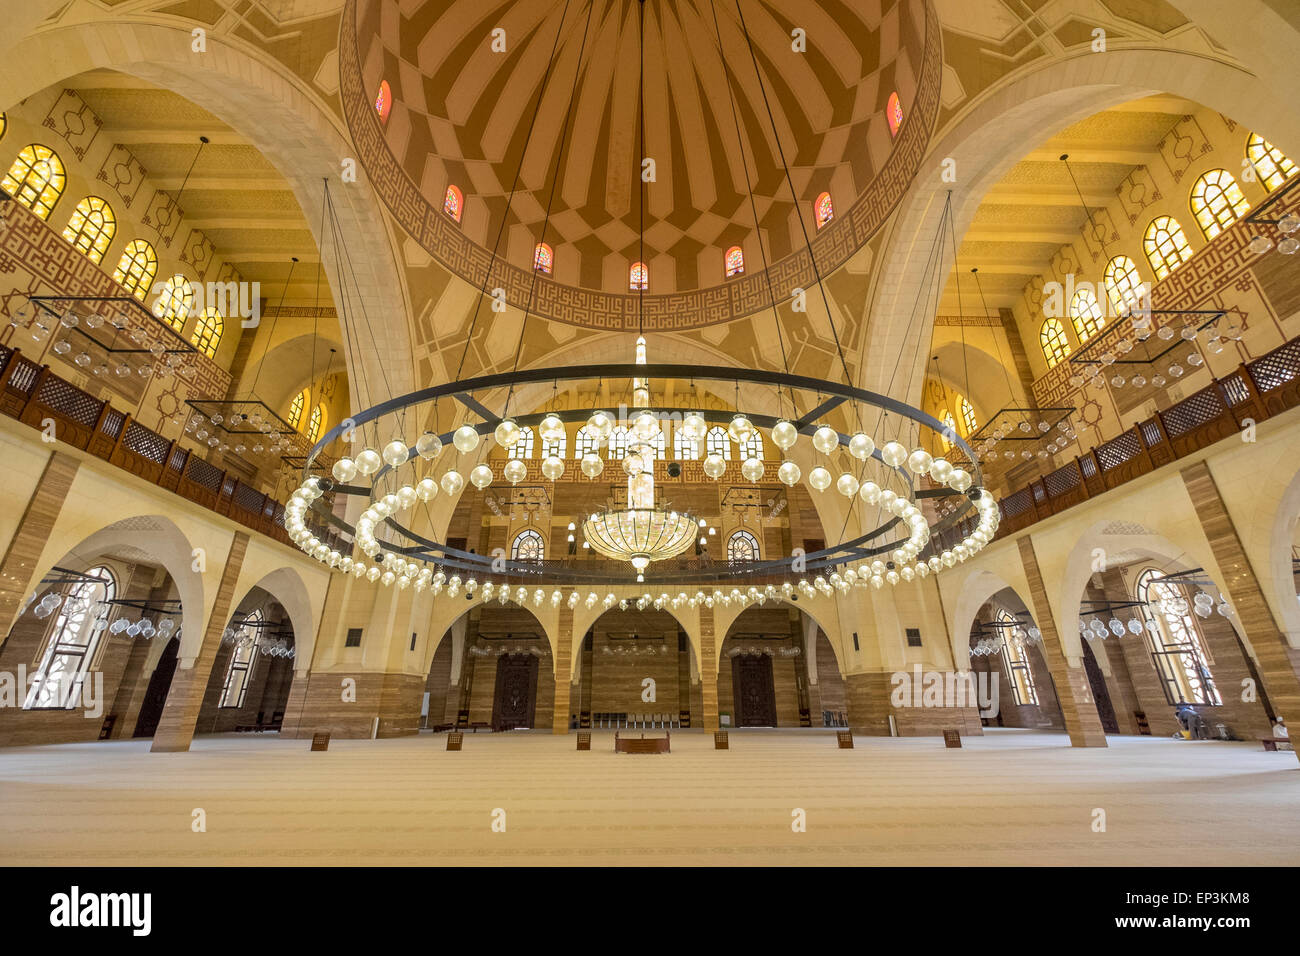 Ornate interior of Al Fateh Grand Mosque in Kingdom of Bahrain Stock Photo